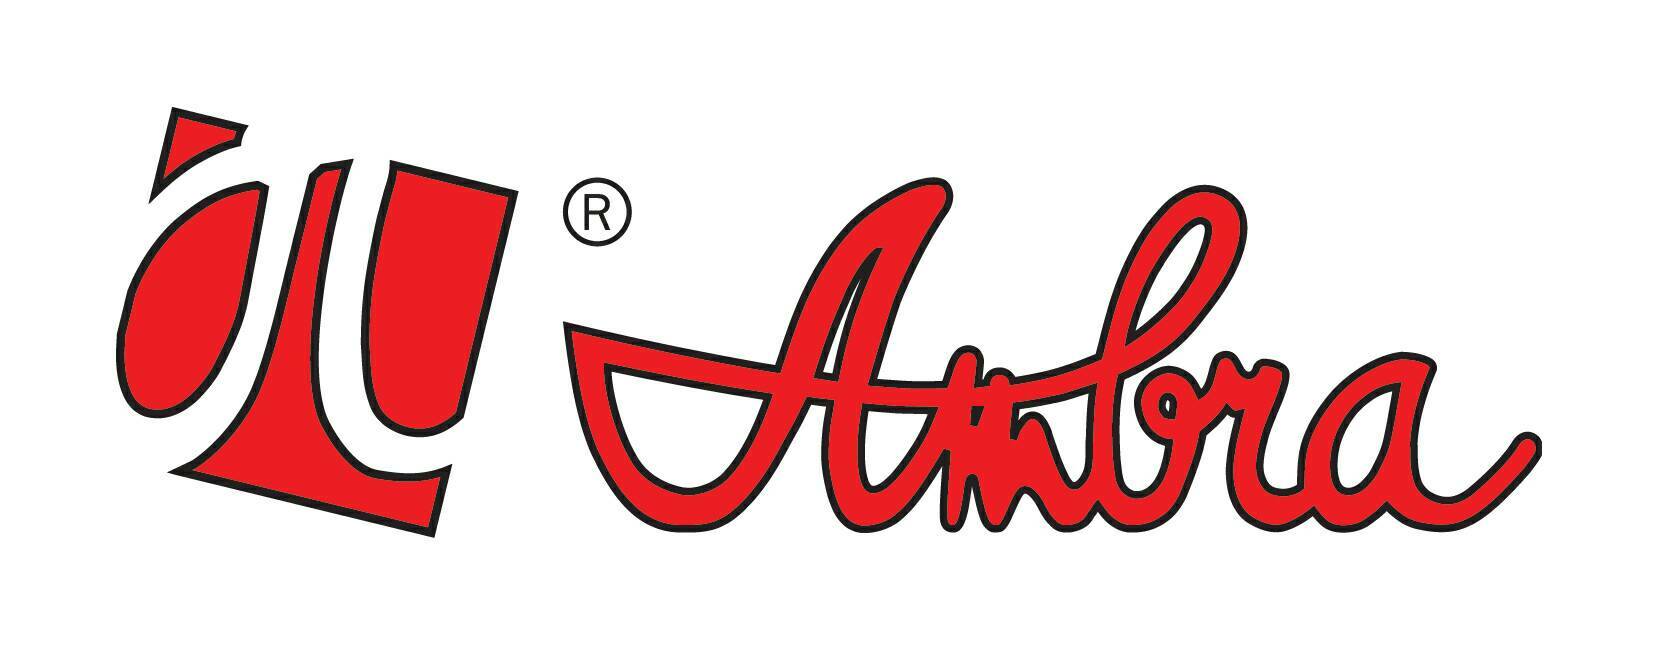 Logo Ambra